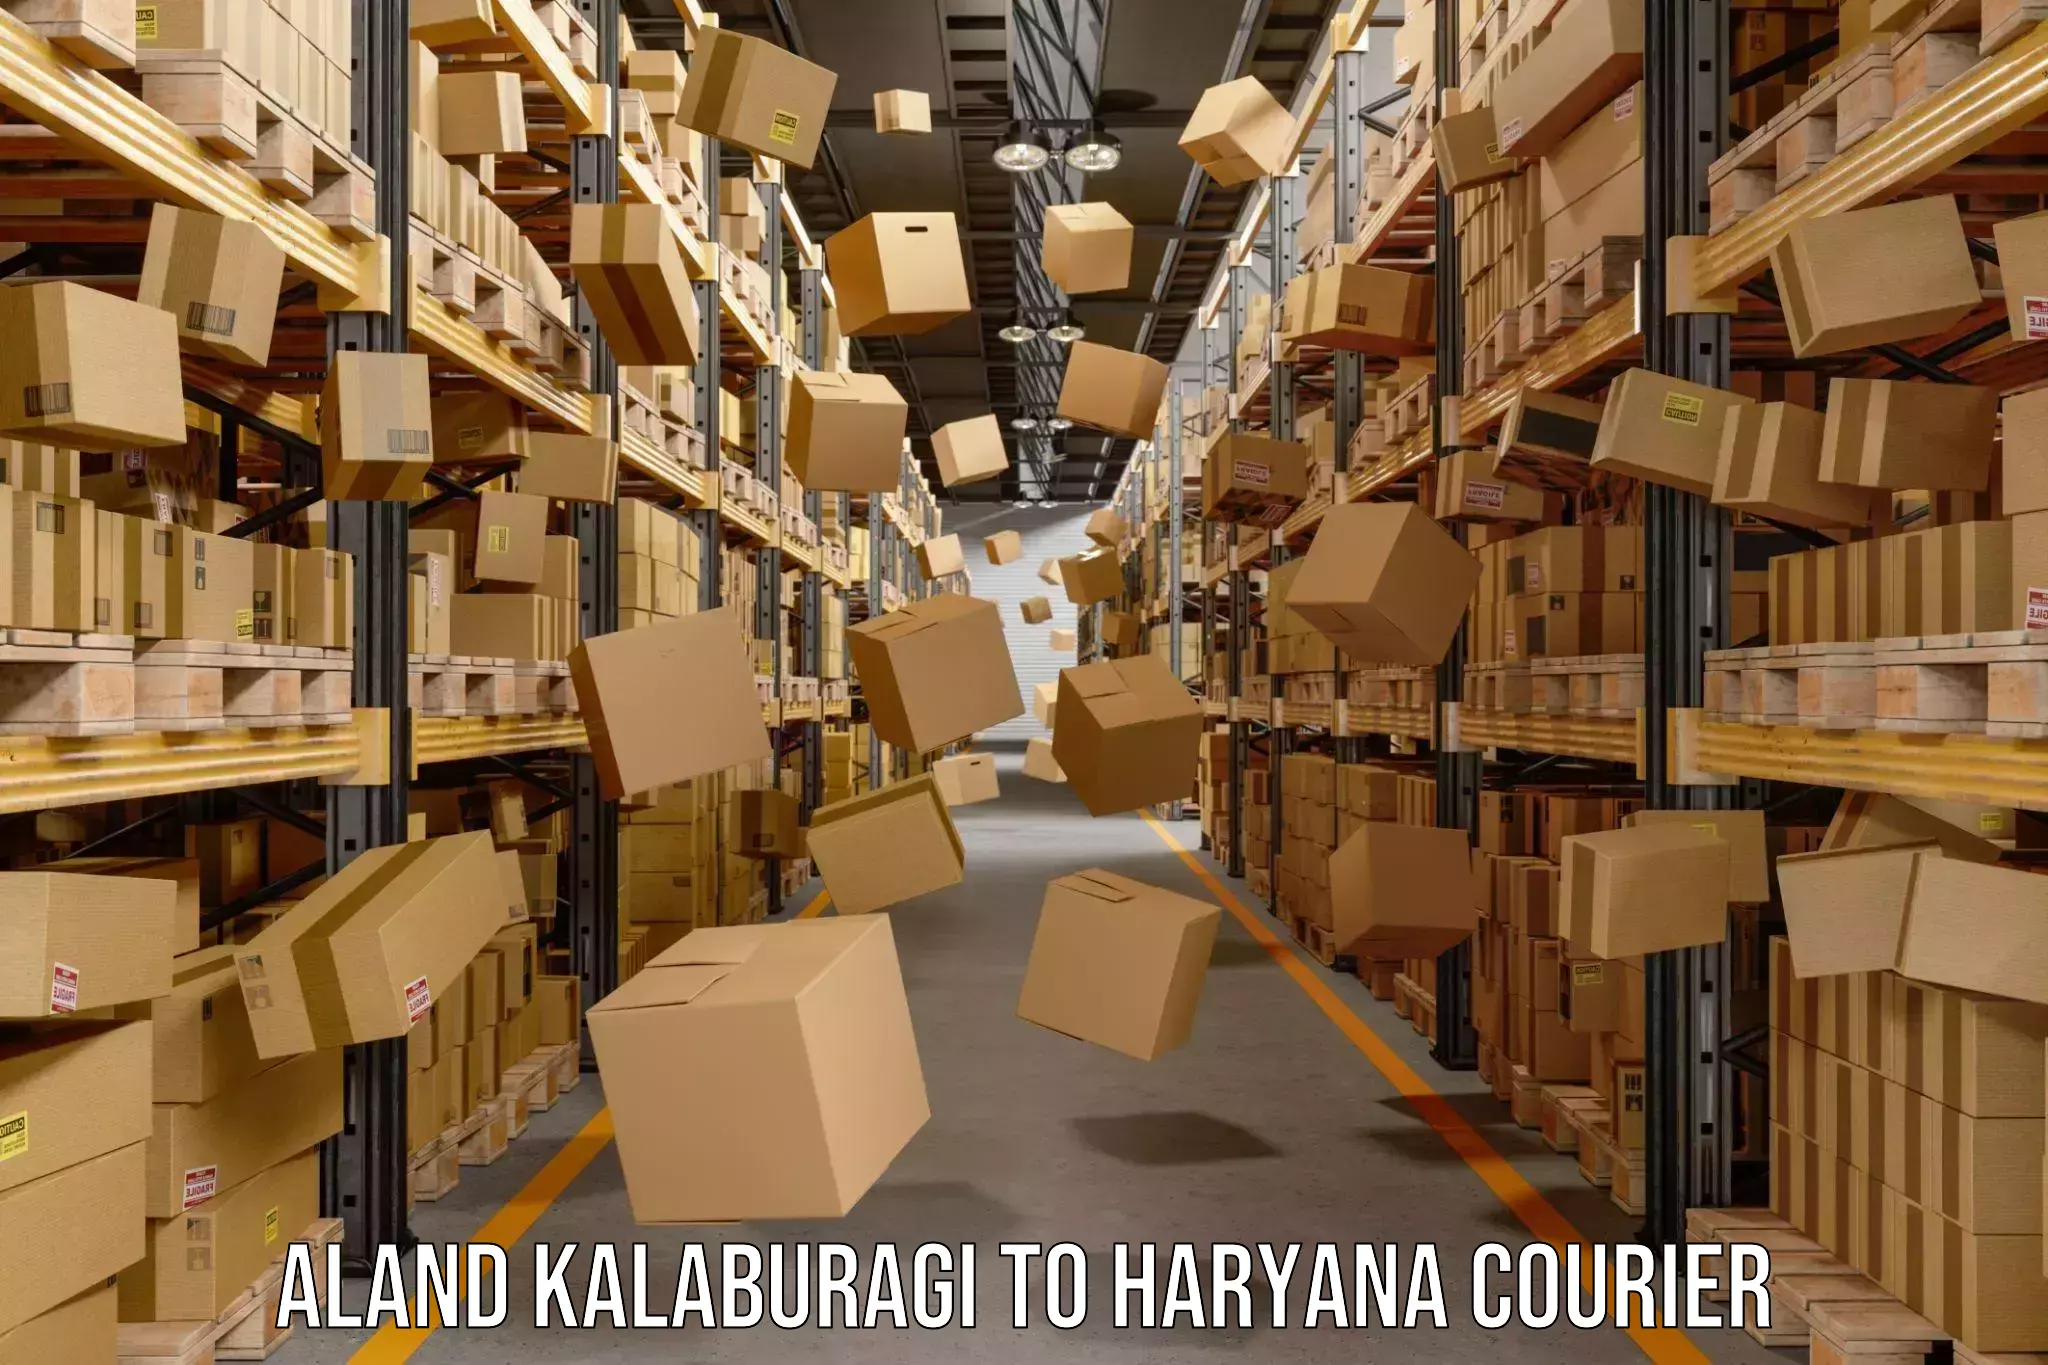 Weekend courier service Aland Kalaburagi to Haryana